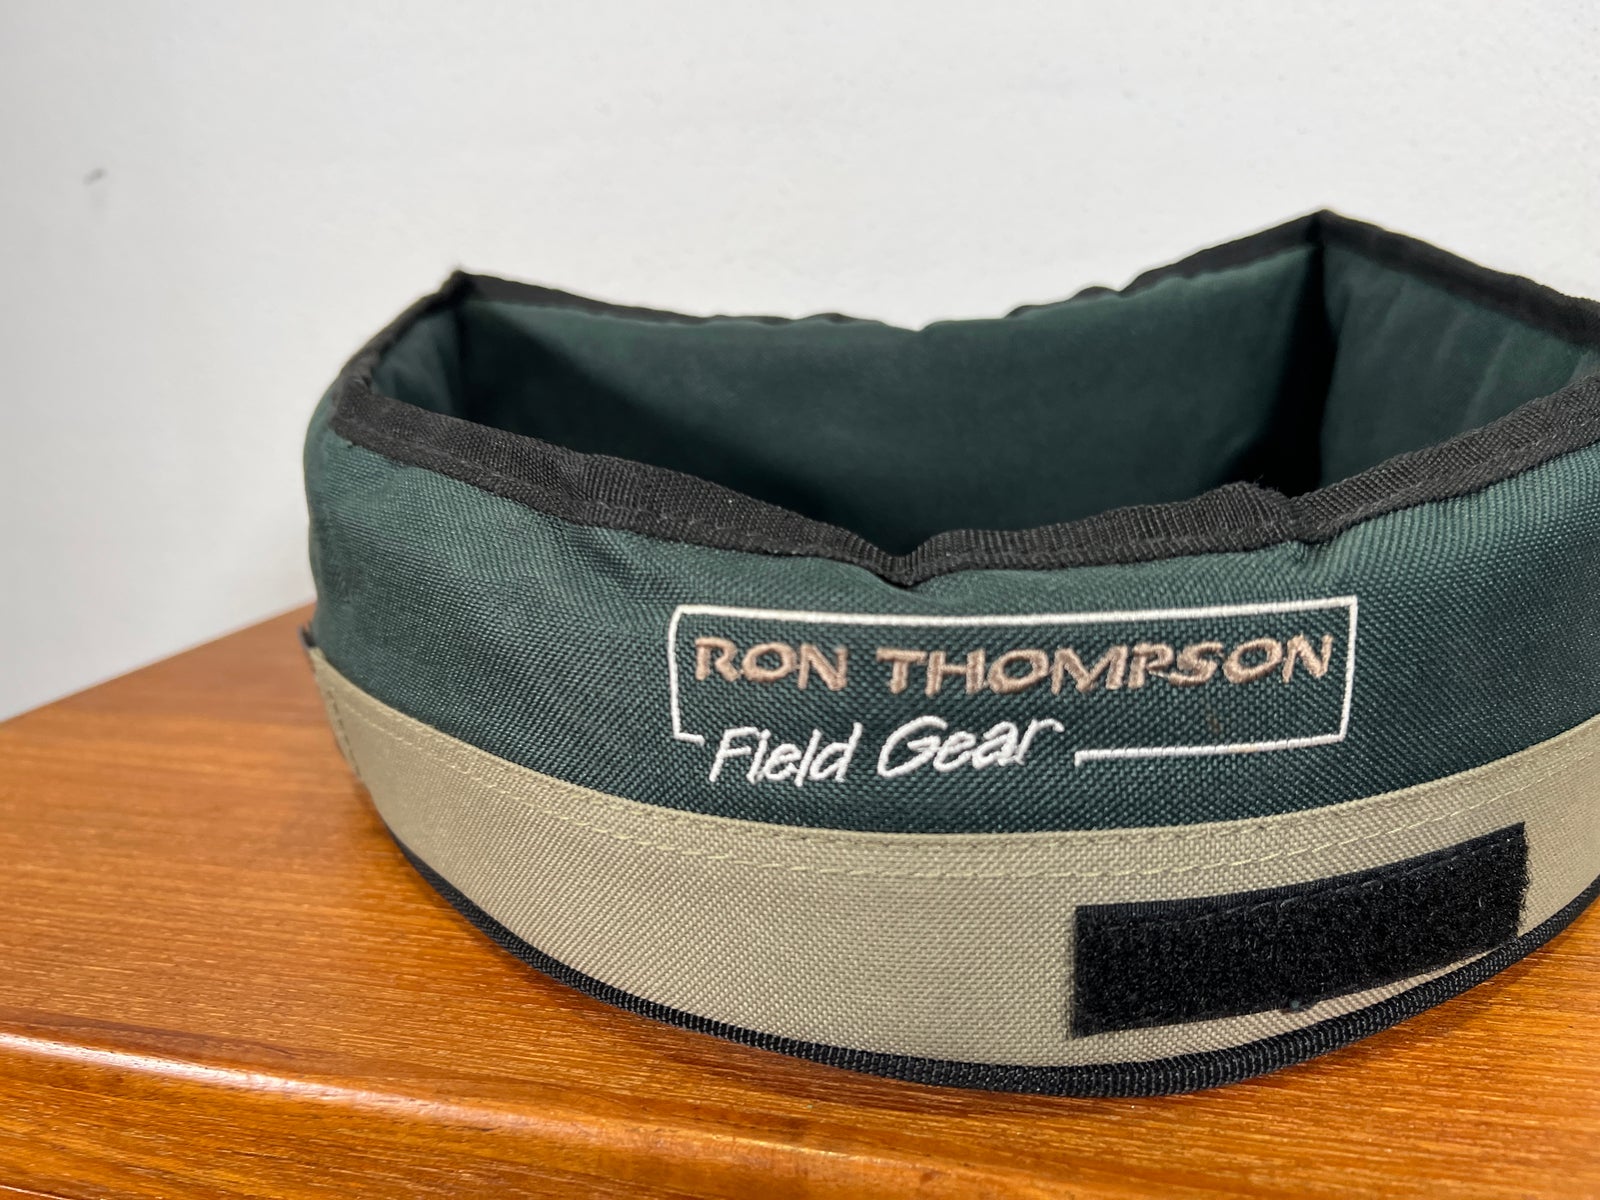 Fisketaske, Ron Thompson